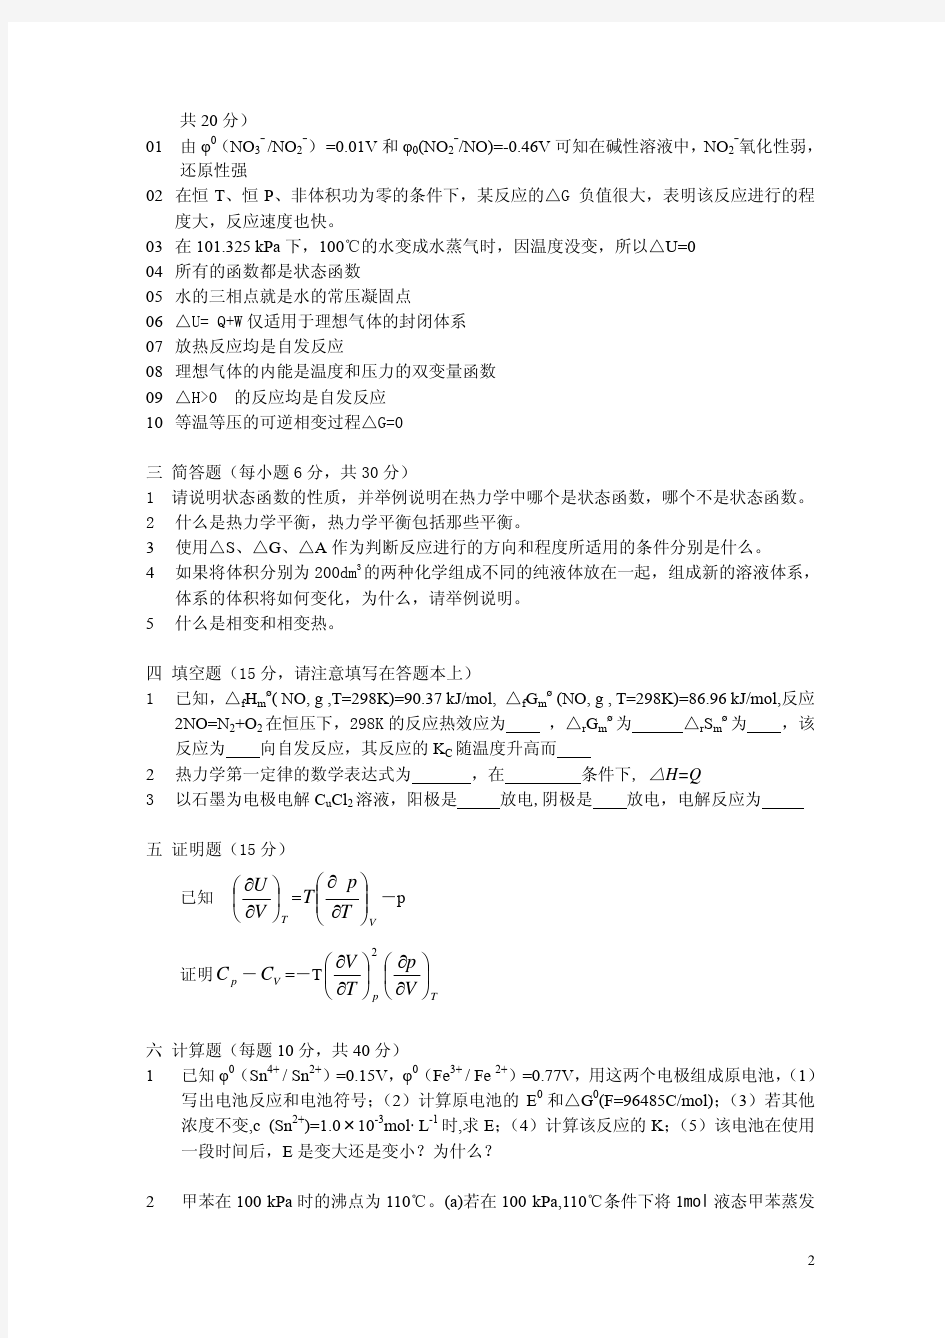 中国石油大学(北京)2005年《物理化学》考研试题与答案